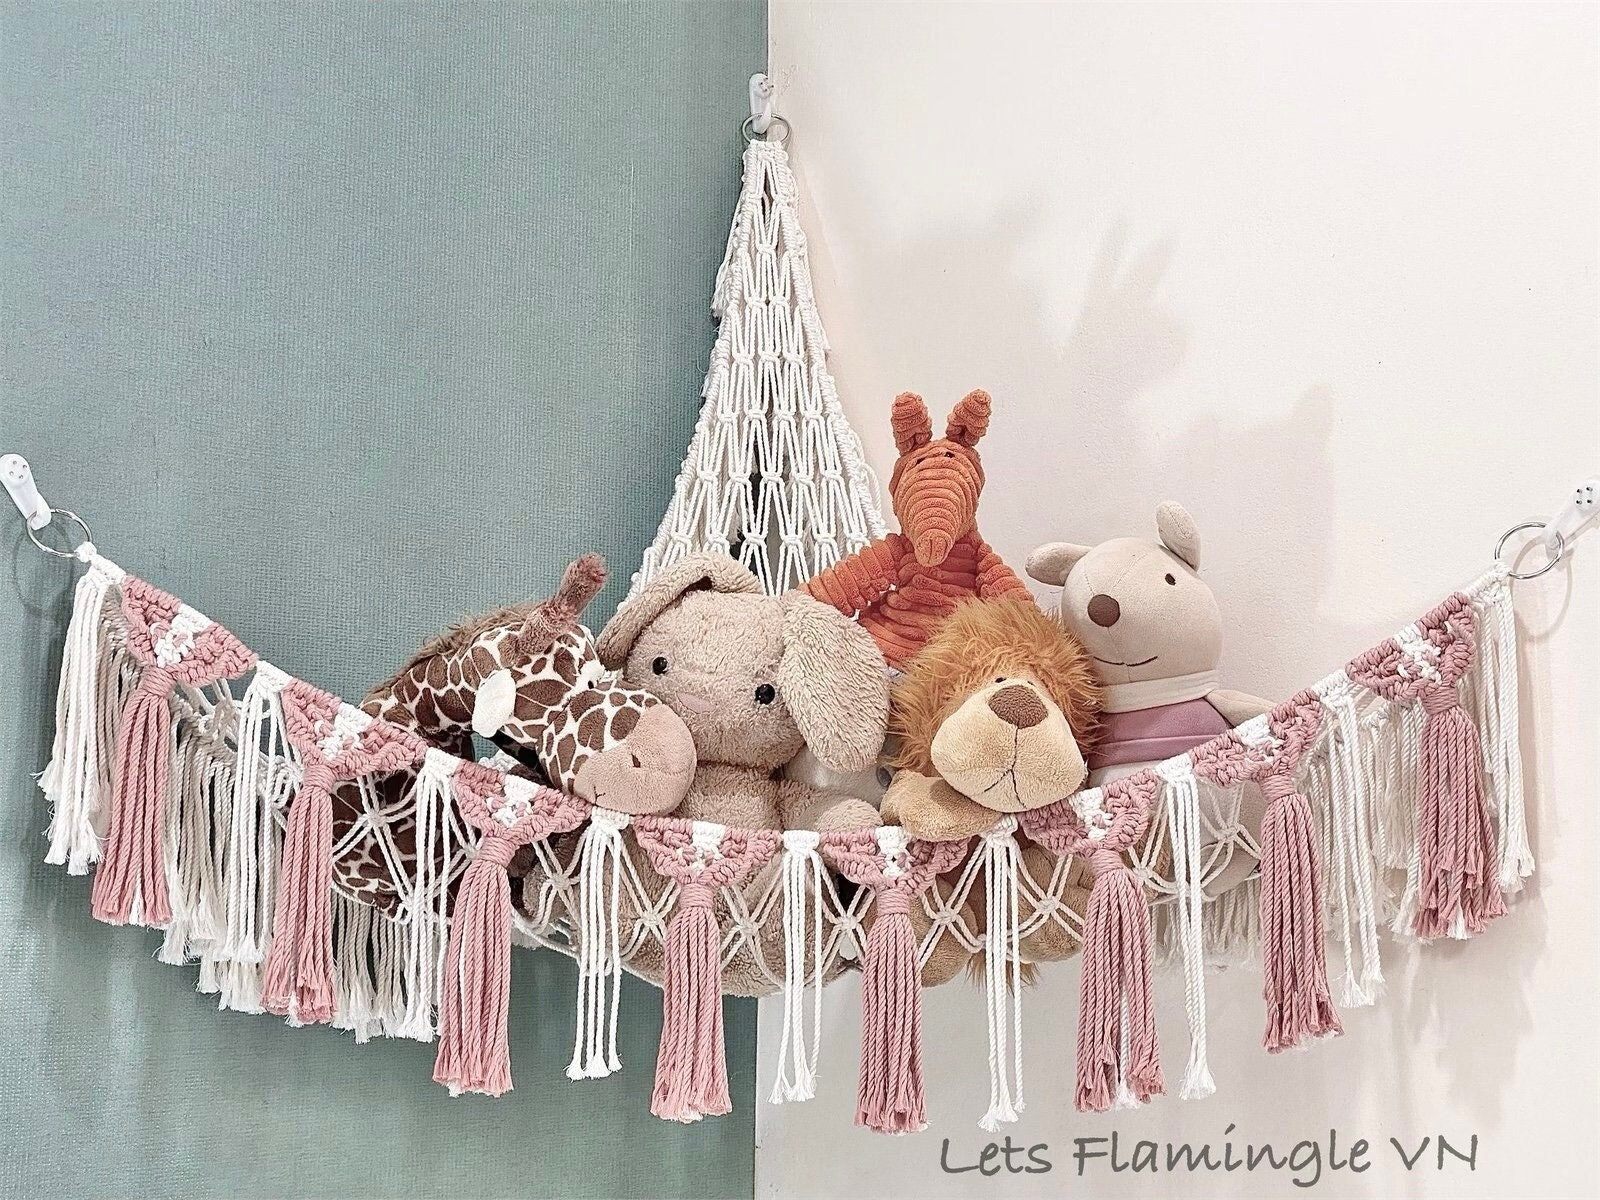 Hammock Toy Net Organizer Corner Stuffed Animals Kids Hanging/Bath Toys Storage, Size: 140*100*100cm, Brown